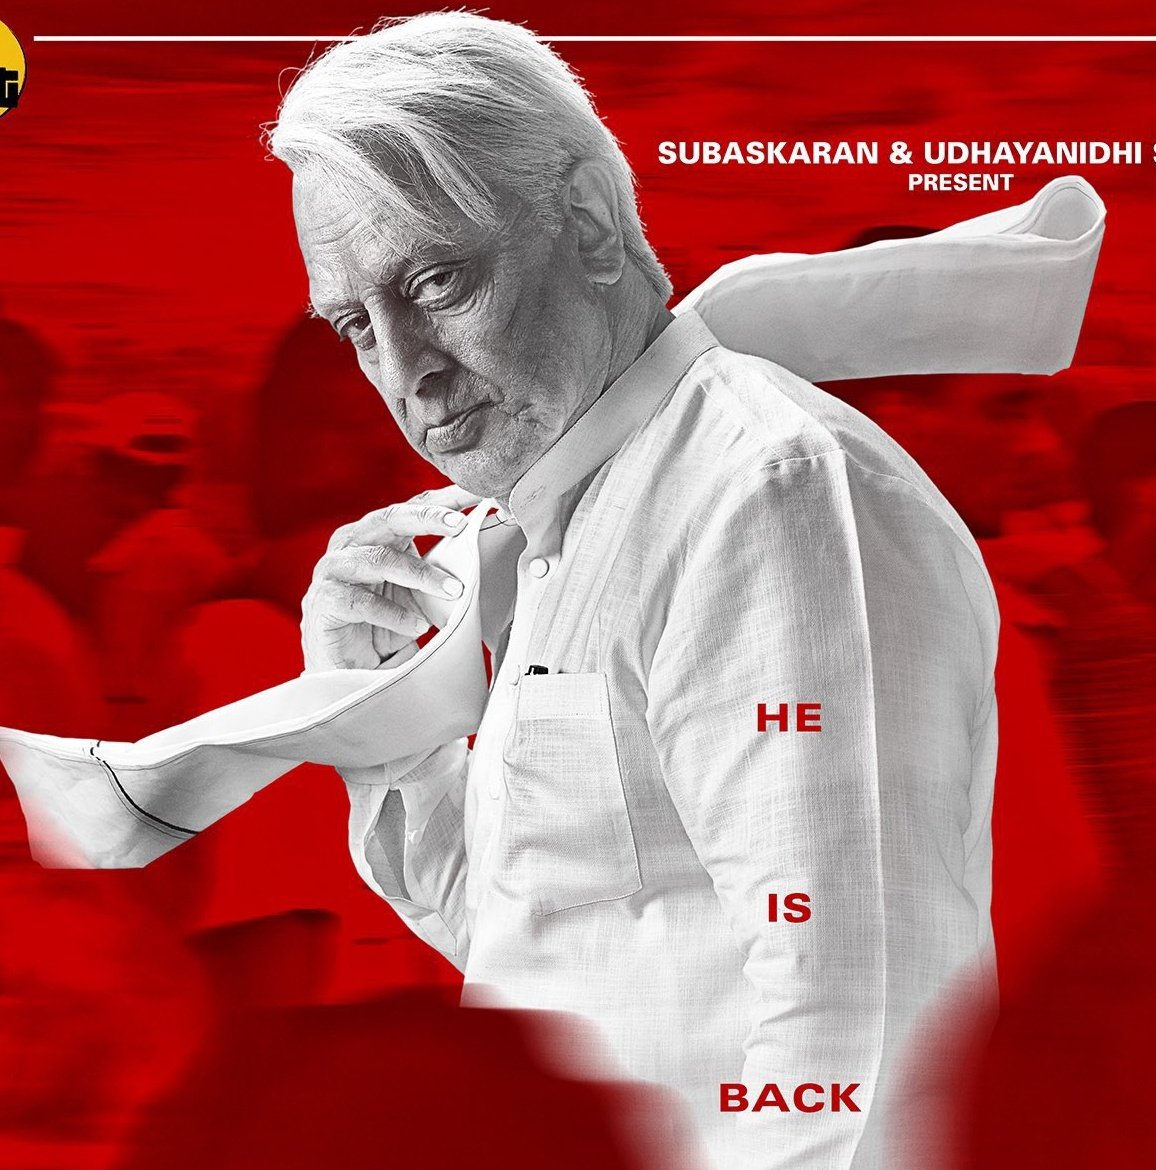 व्हाइट शर्ट पहने दमदार लुक में दिख रहे हैं कमल हासन, ‘Indian 2’ का पोस्टर हुआ जारी